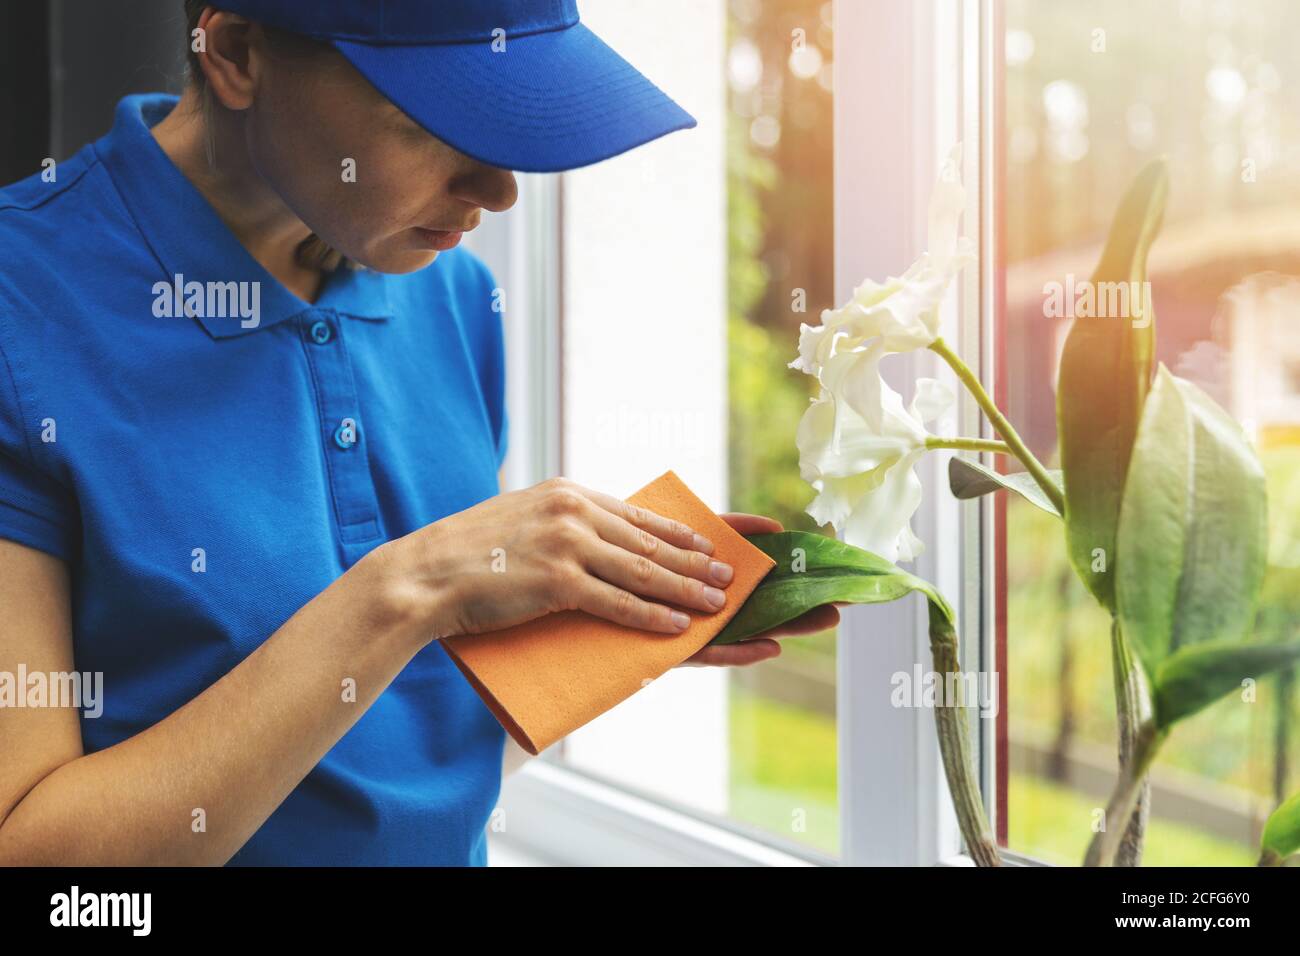 Professionelle Hausreinigung Service - Frau in blau einheitliche Reinigung Staub mit Tuch aus Blumenblatt auf Fensterbank Stockfoto